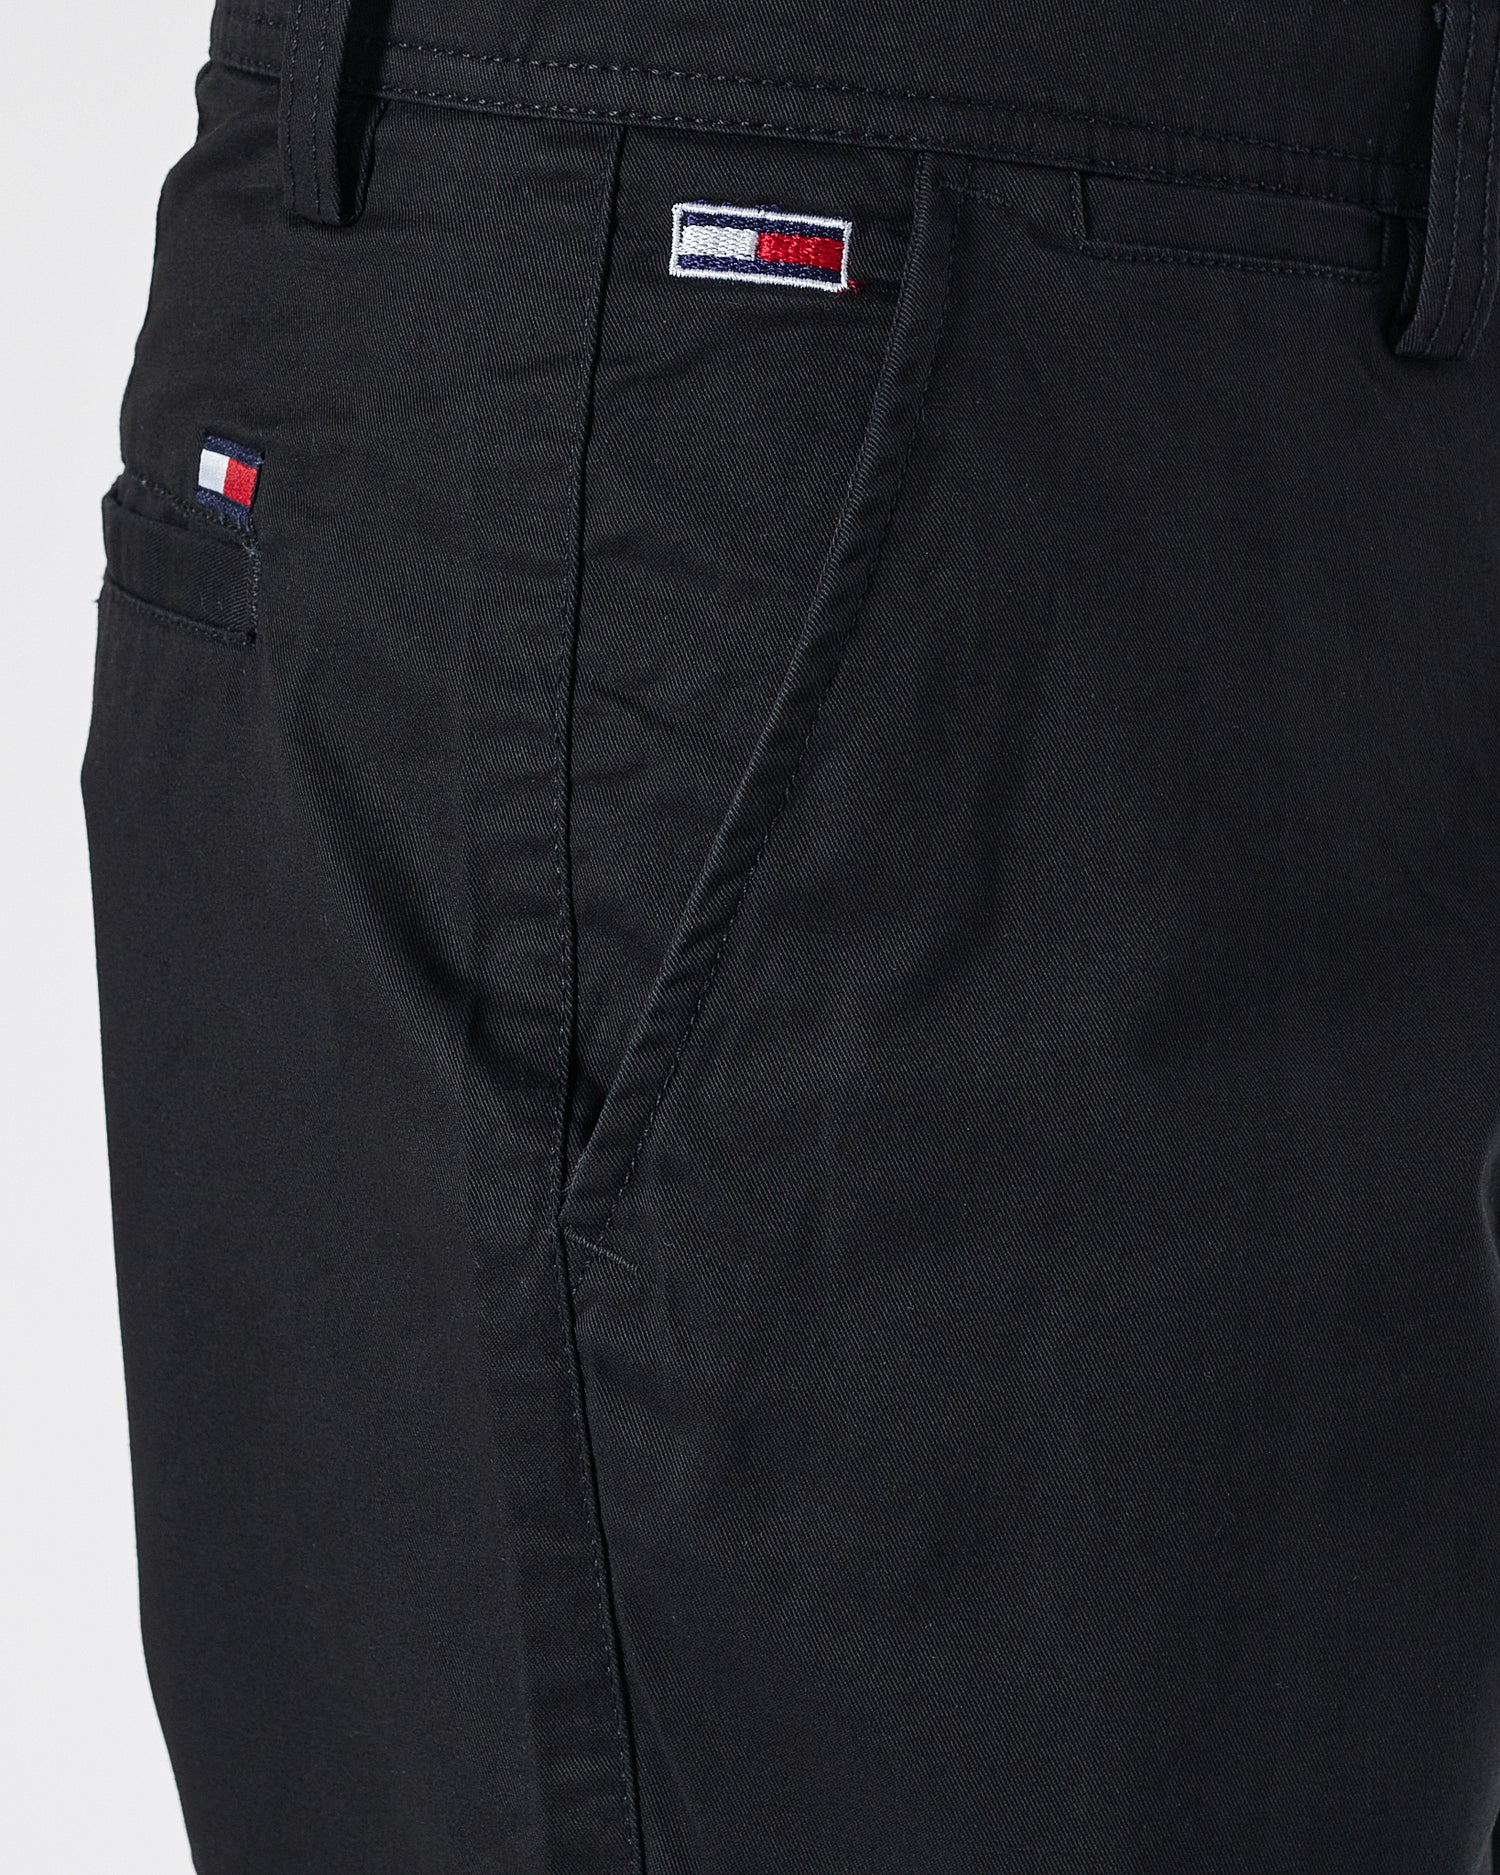 TH Khaki Men Black Short Pants 16.90